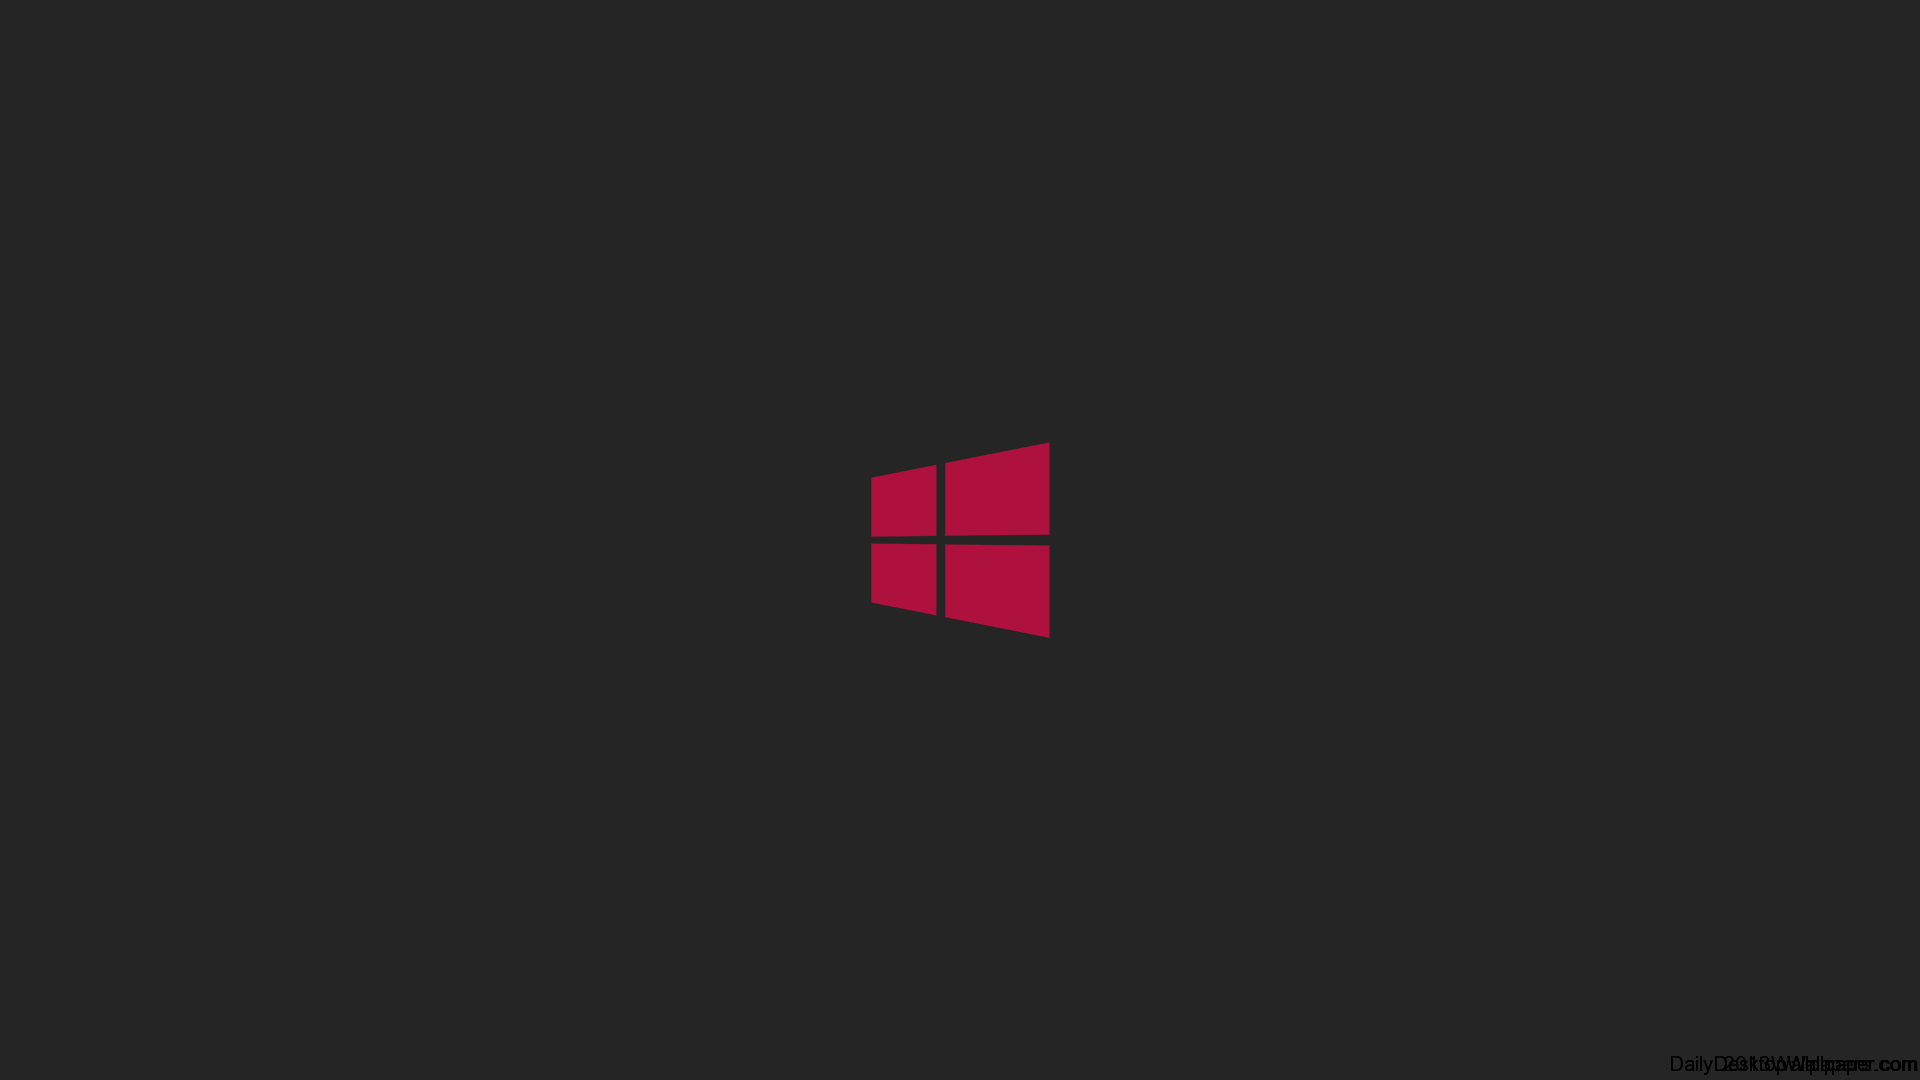 Hãy cập nhật máy tính của bạn với hình nền Windows Màu Cam và Đen tuyệt đẹp từ WallpaperDog. Với chất lượng ấn tượng và độ phân giải cao, hình nền này sẽ khiến cho máy tính của bạn trở nên tươi sáng hơn bao giờ hết.